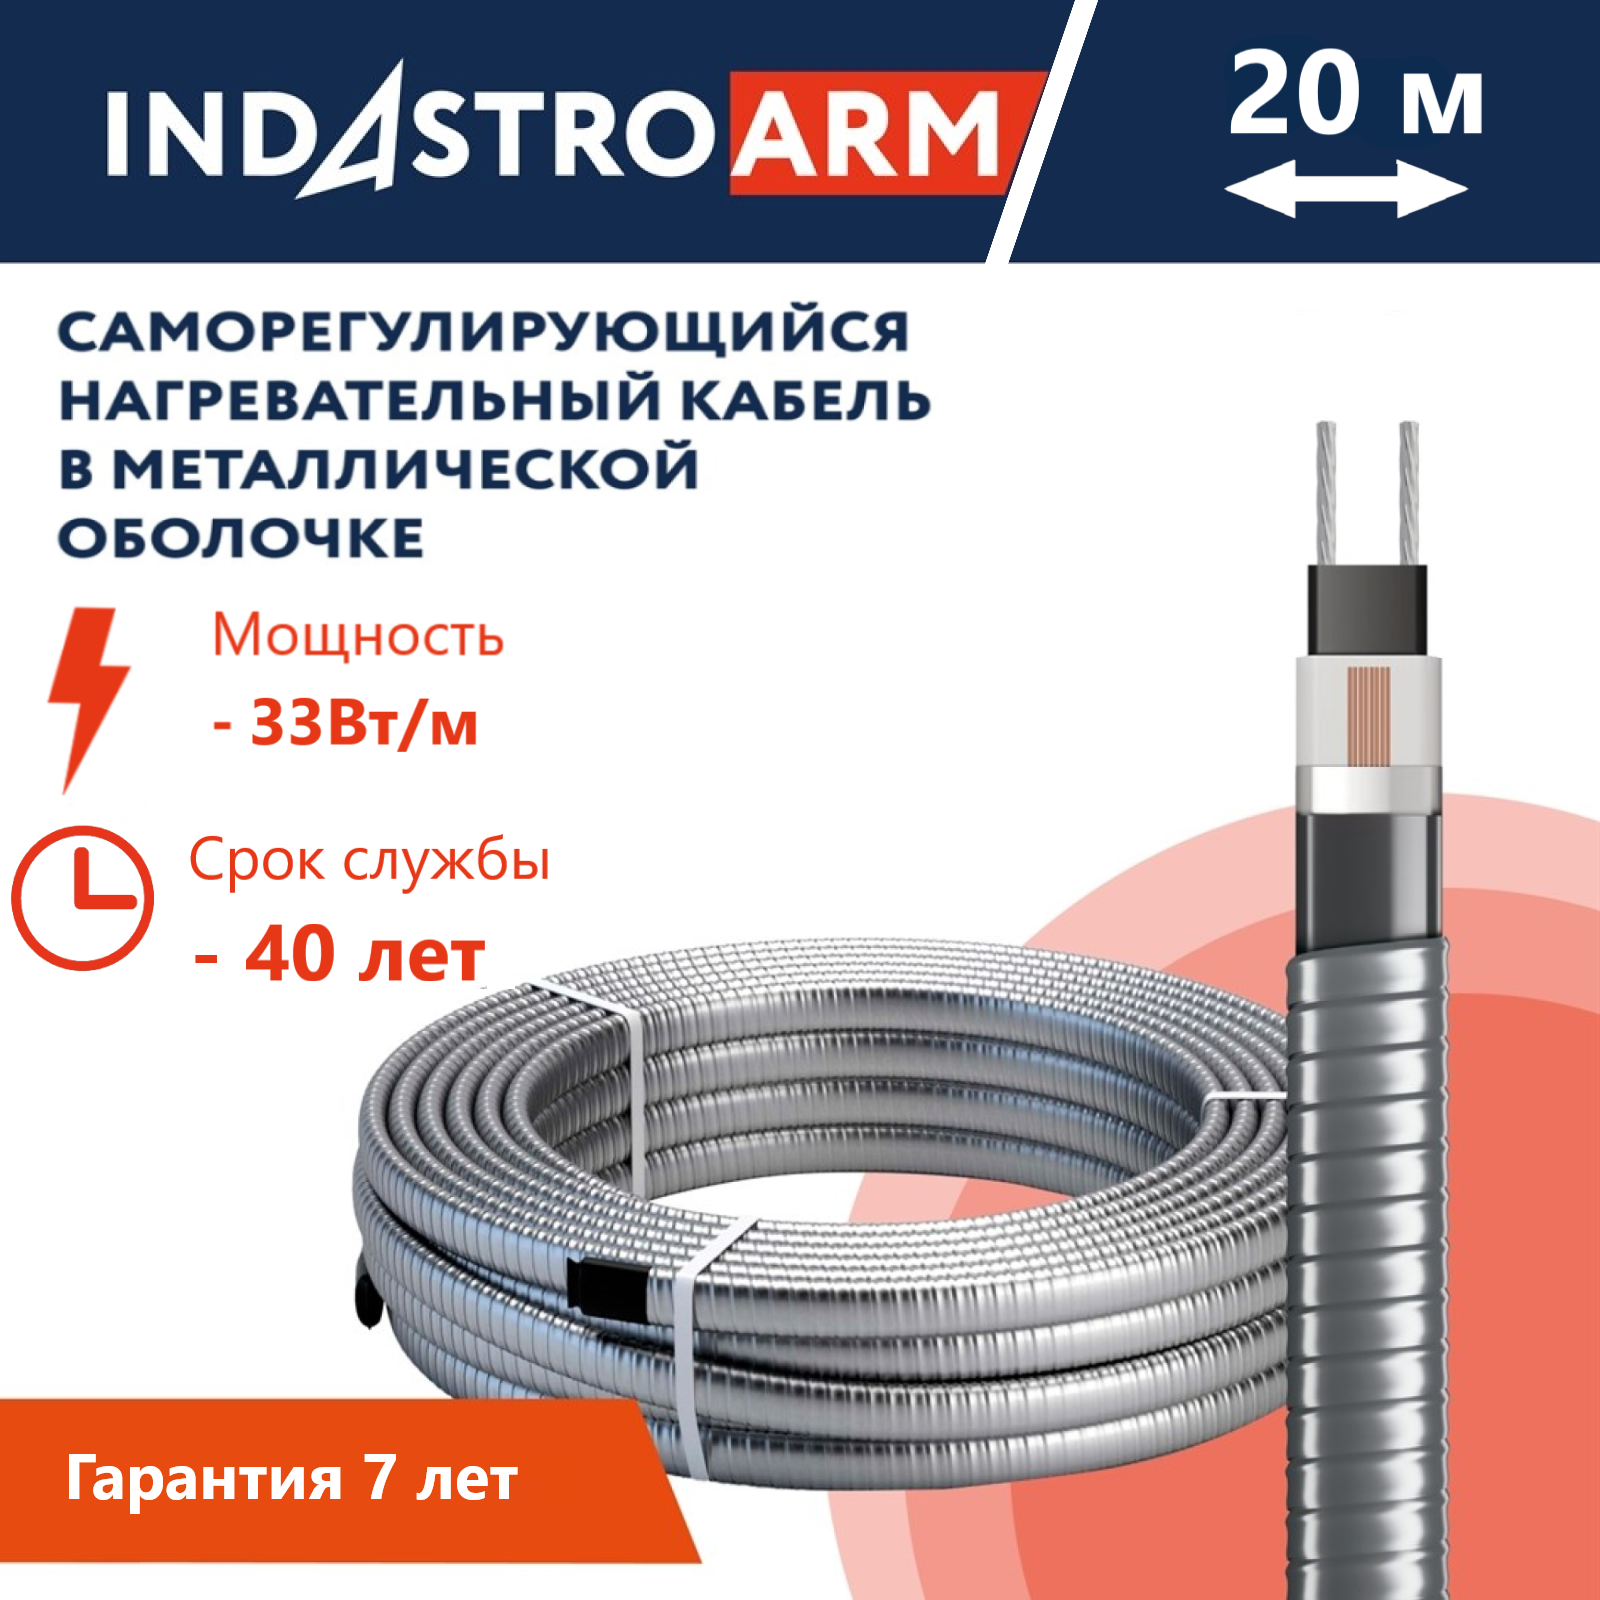 Греющий кабель в броне для обогрева кровли, водостоков IndAstro ARM, 33 Вт/м, 20 метров.